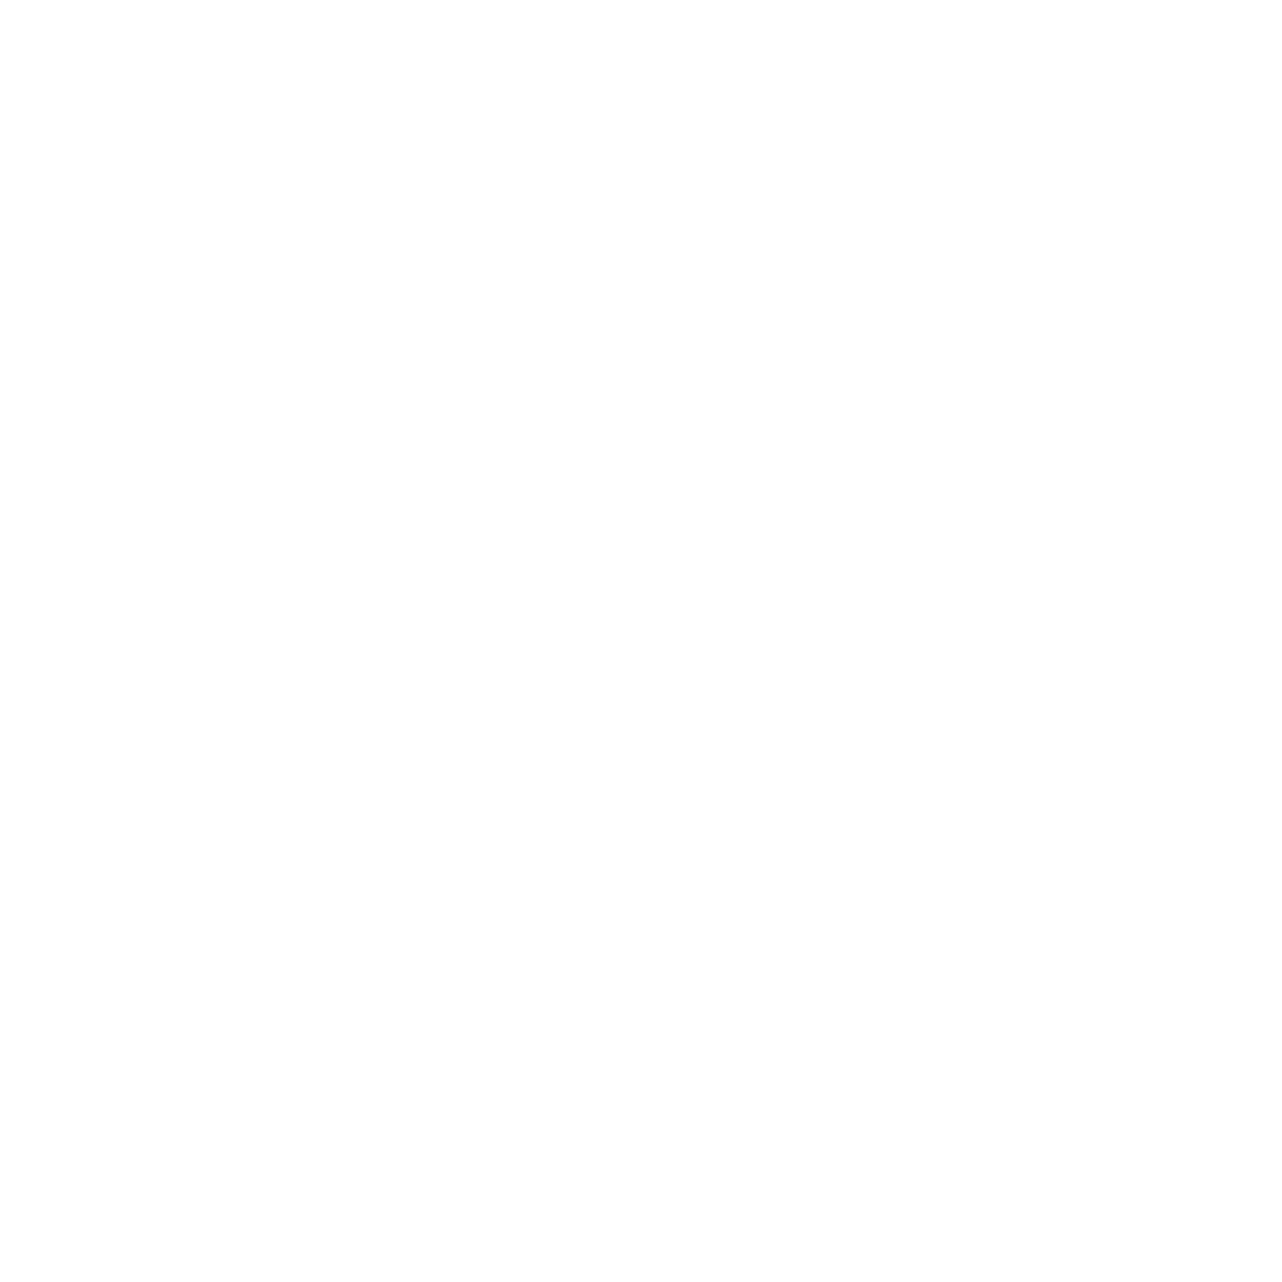 St Johns at Barlaston Hall